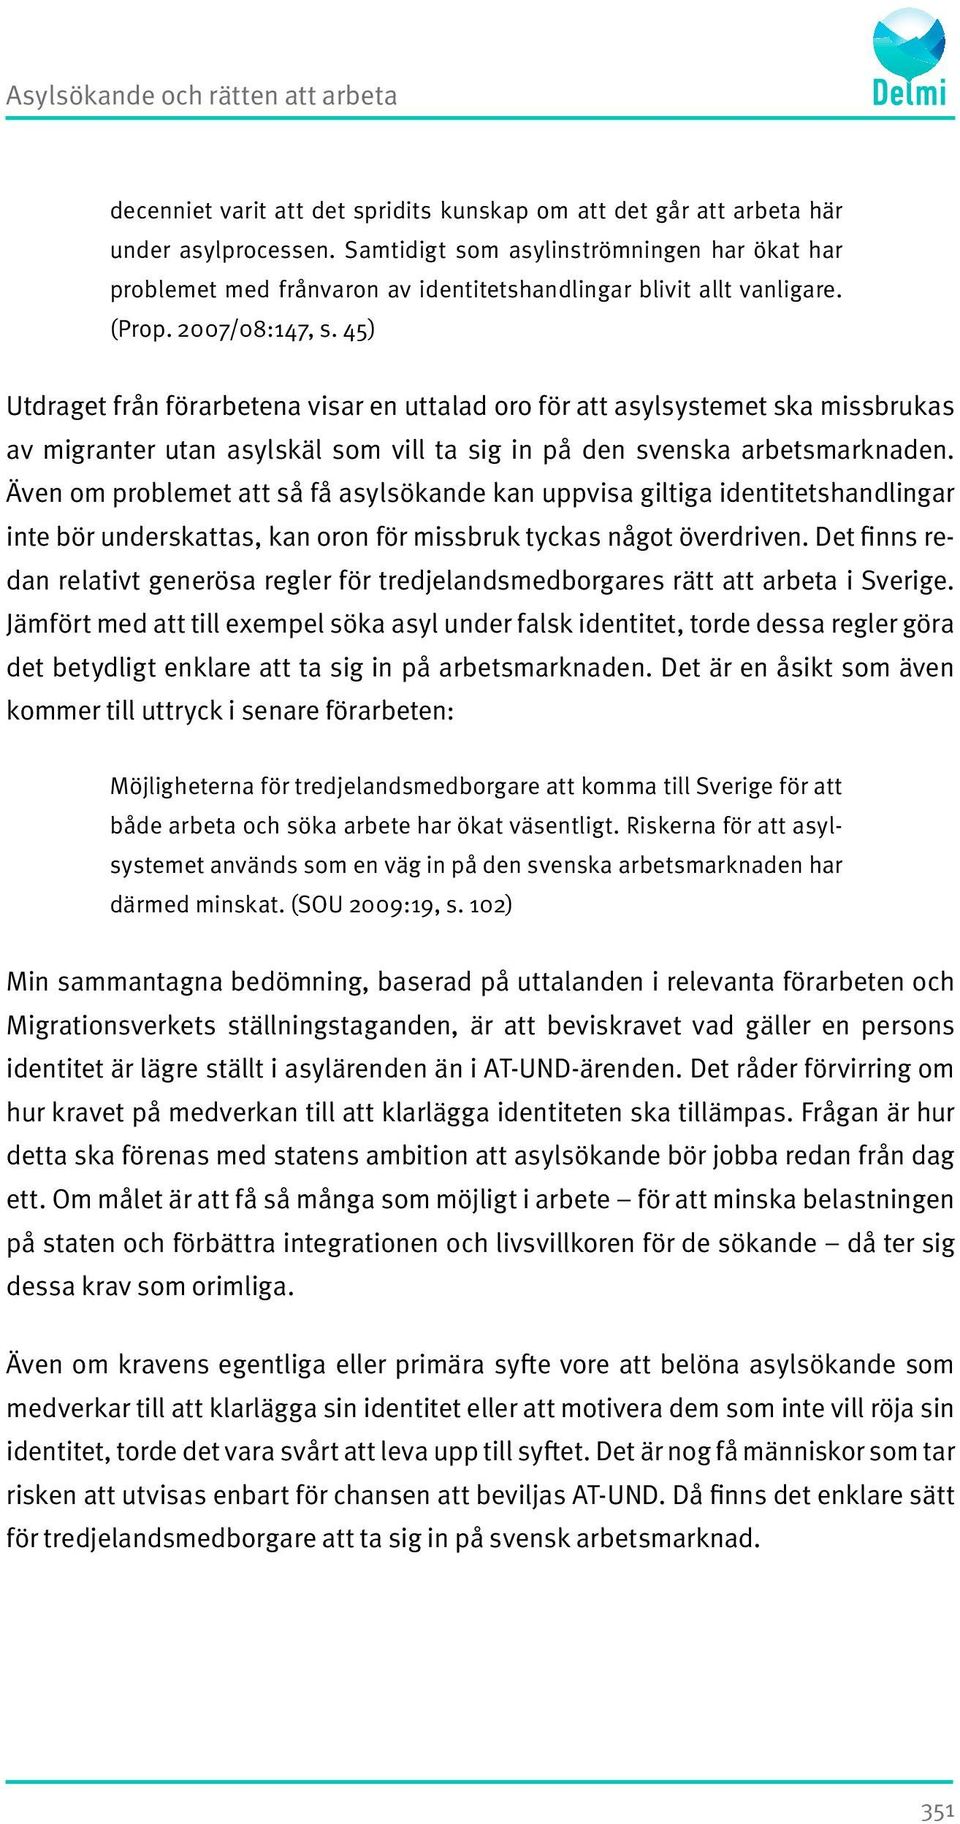 45) Utdraget från förarbetena visar en uttalad oro för att asylsystemet ska missbrukas av migranter utan asylskäl som vill ta sig in på den svenska arbetsmarknaden.